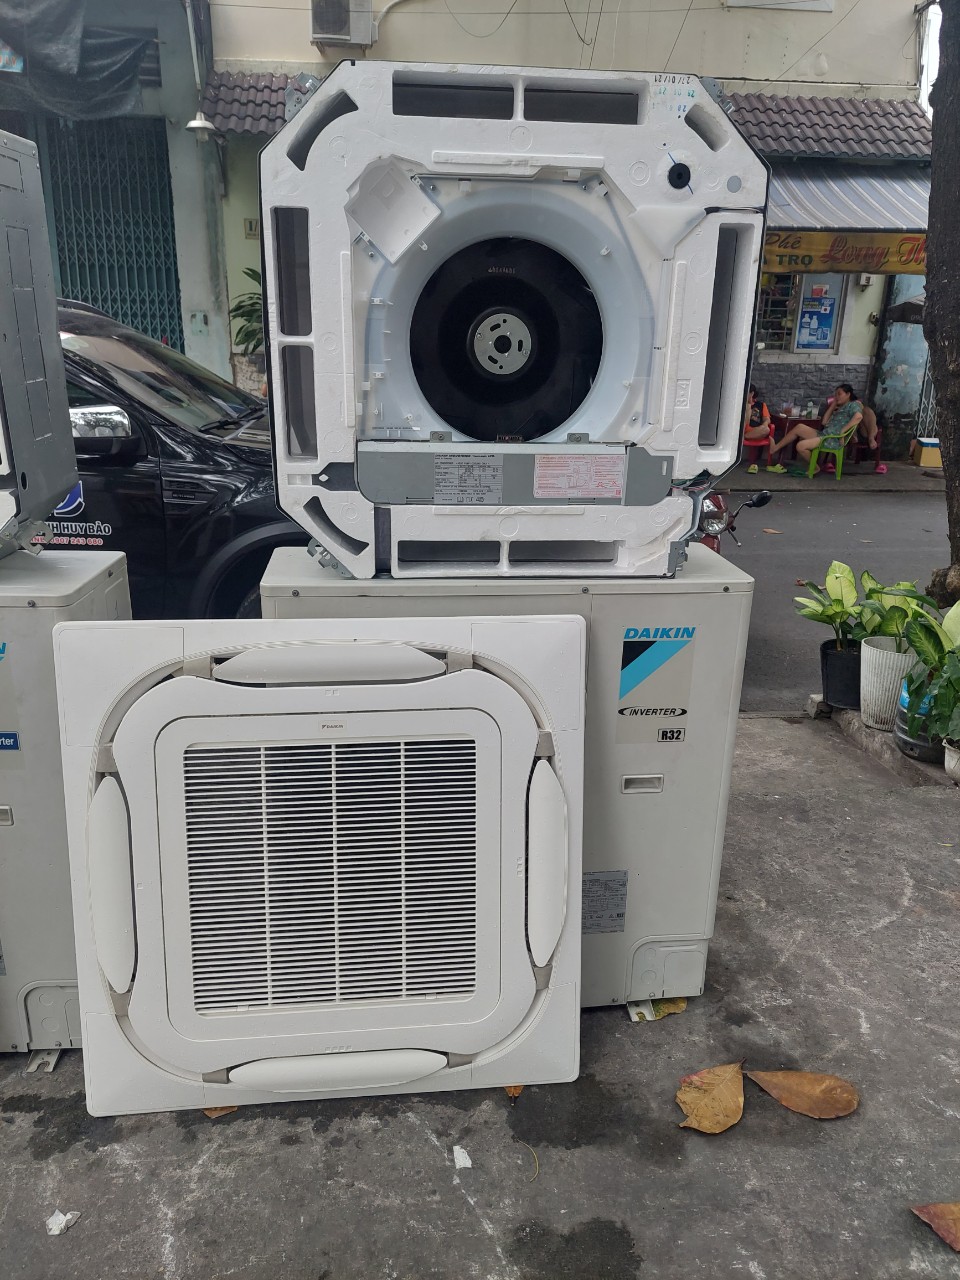 Thu mua máy lạnh Đồng Xoài Bình Phước | Địa chỉ bán máy lạnh cũ uy tín là đơn vị cung cấp các dòng máy lạnh cũ ổn định, với chất lượng cao và uy tín tại các quận huyện Thành phố Hồ Chí Minh 